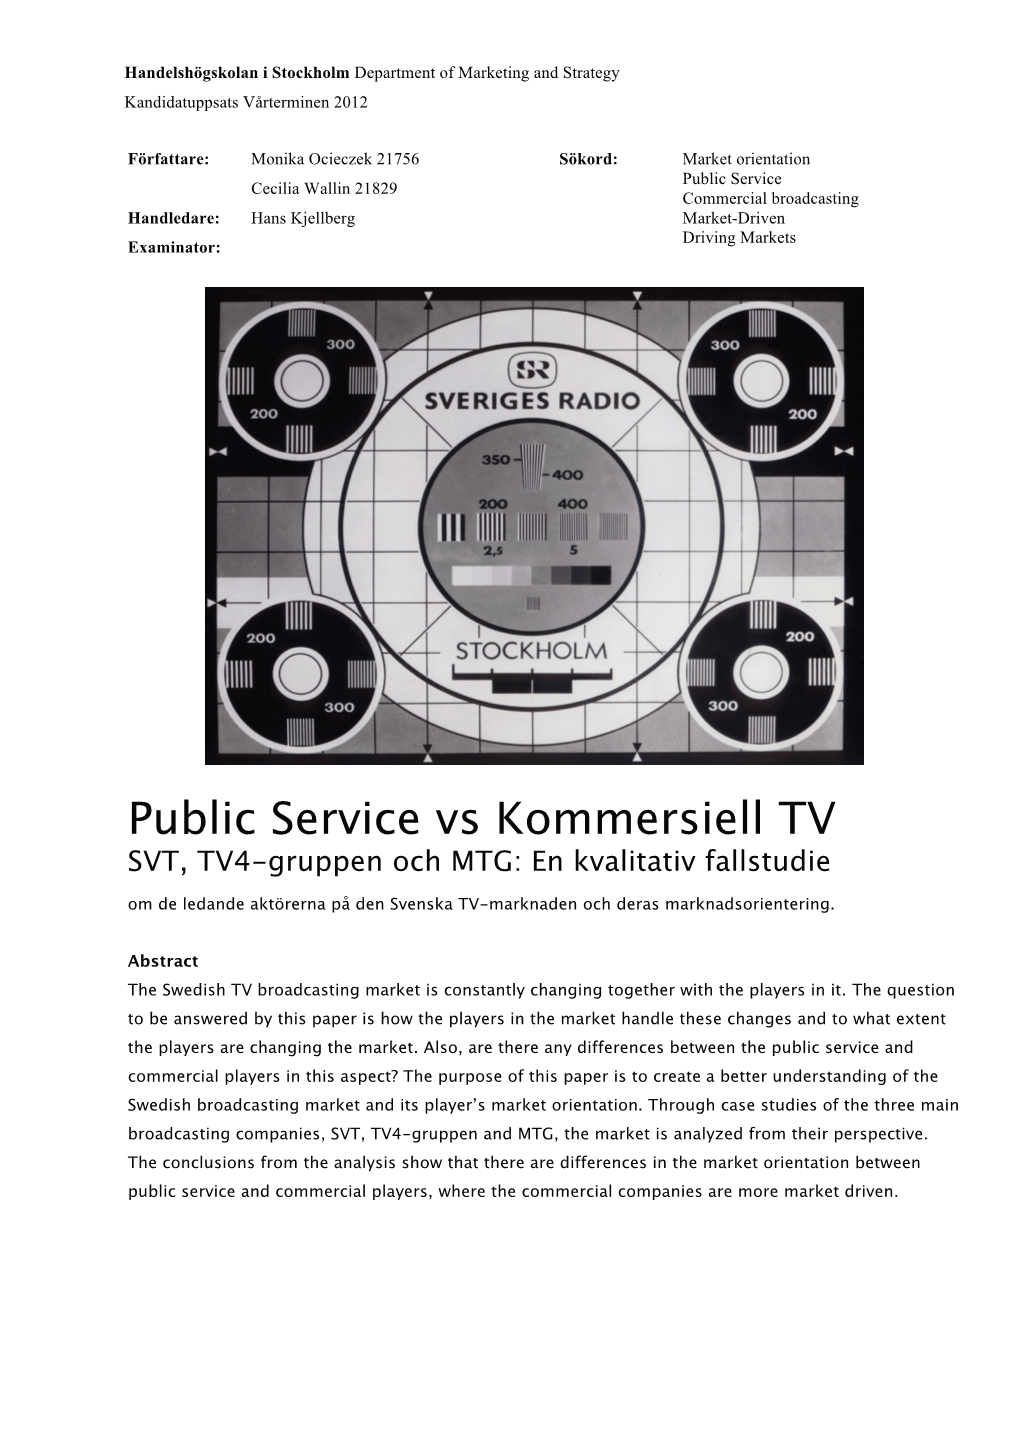 Public Service Vs Kommersiell TV SVT, TV4-Gruppen Och MTG: En Kvalitativ Fallstudie Om De Ledande Aktörerna På Den Svenska TV-Marknaden Och Deras Marknadsorientering